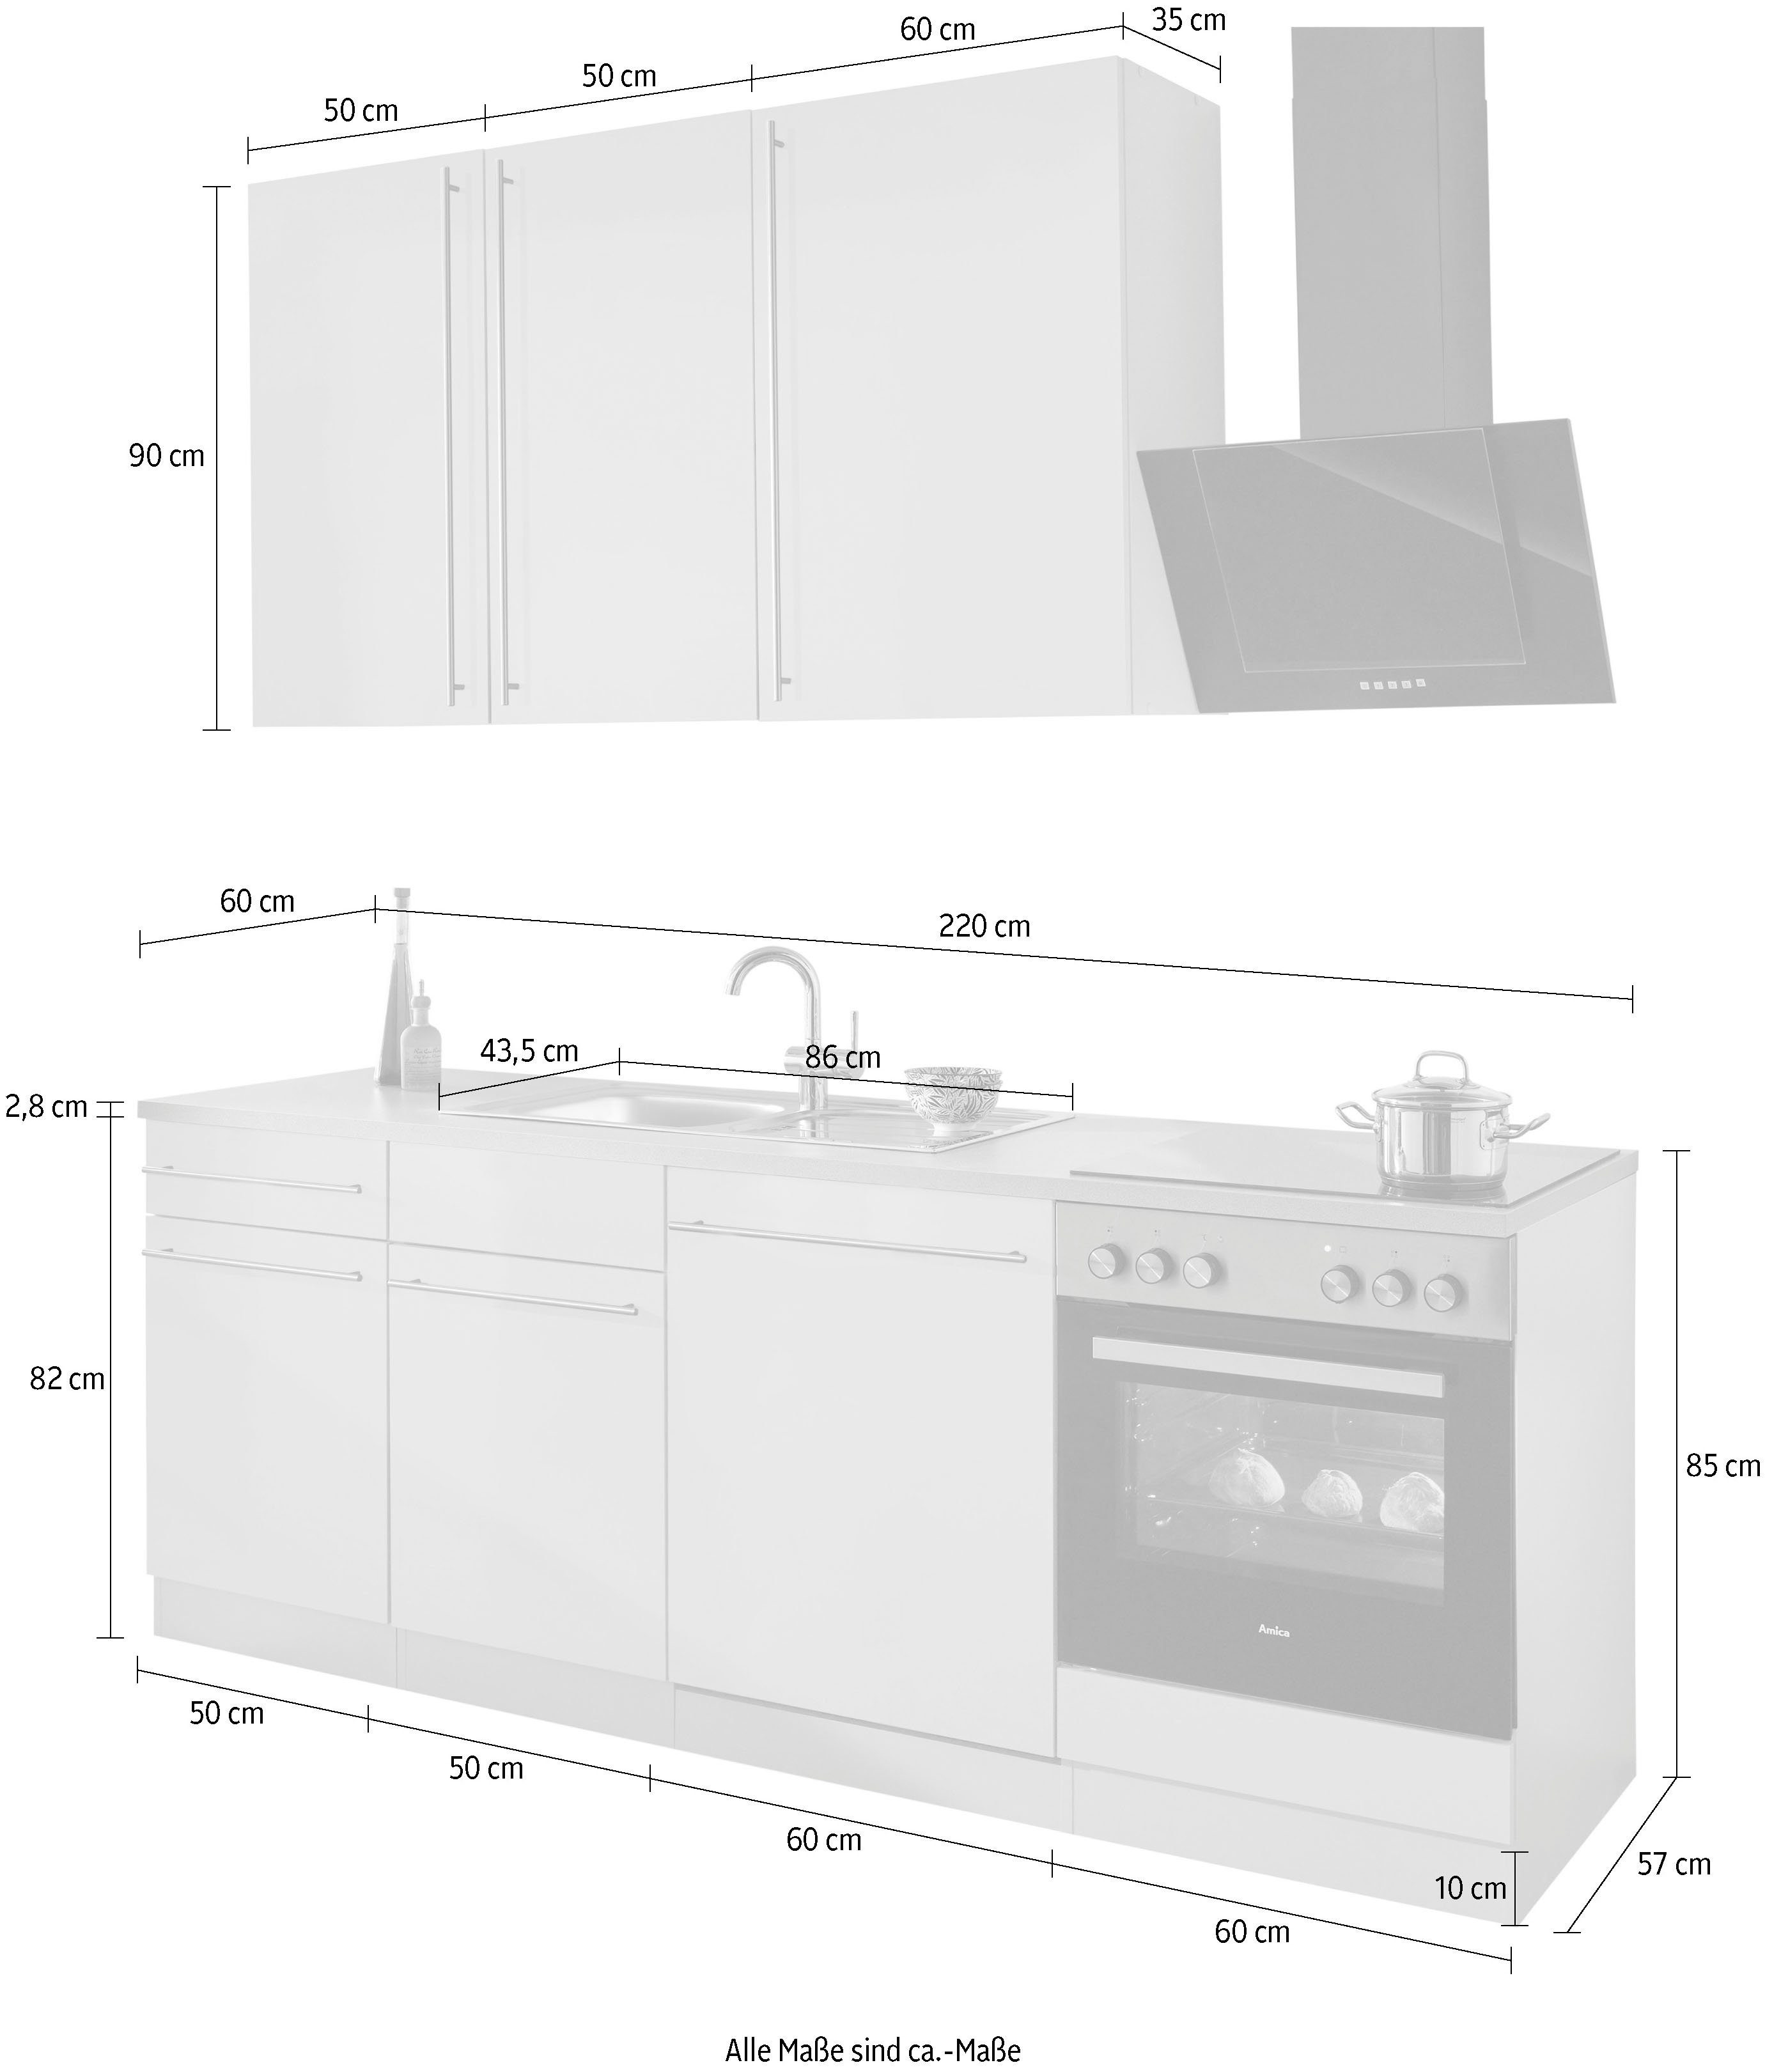 Cashmere 220 | cm Küchenzeile Breite E-Geräten, wiho cashmere mit Küchen Chicago,